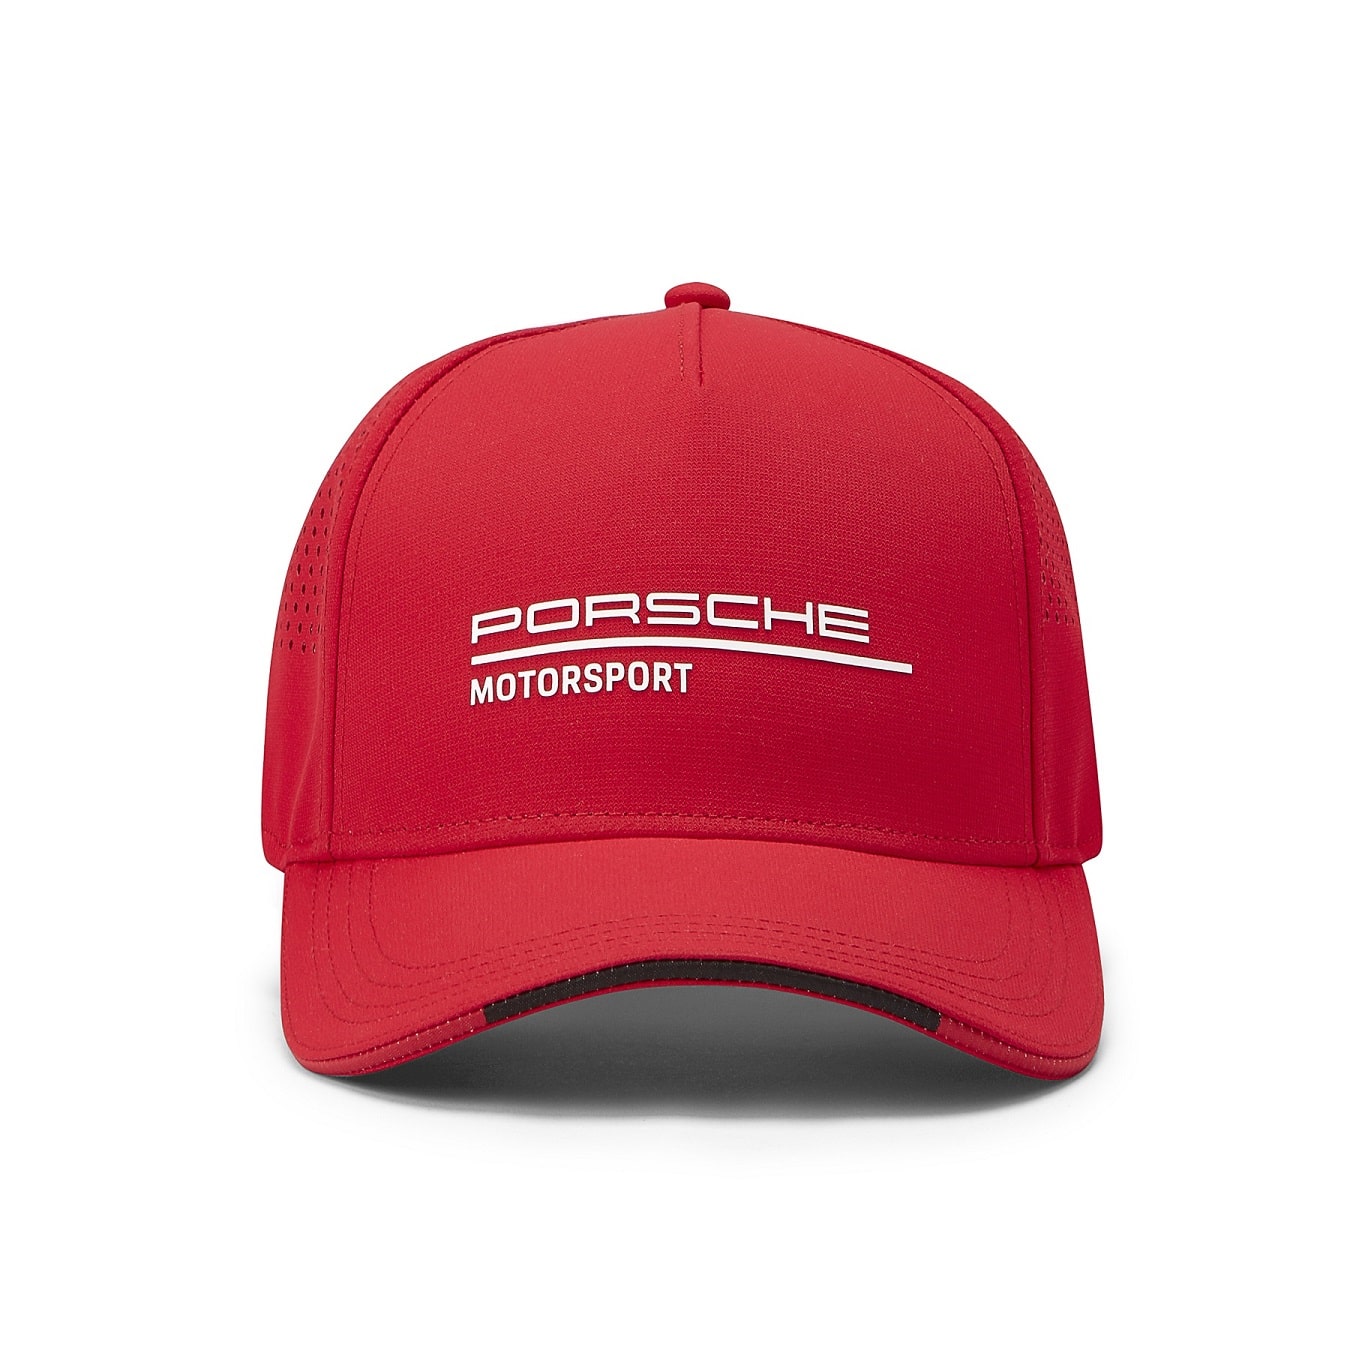 Casquette Porsche Motorsport rouge pour adulte - Pro-RS